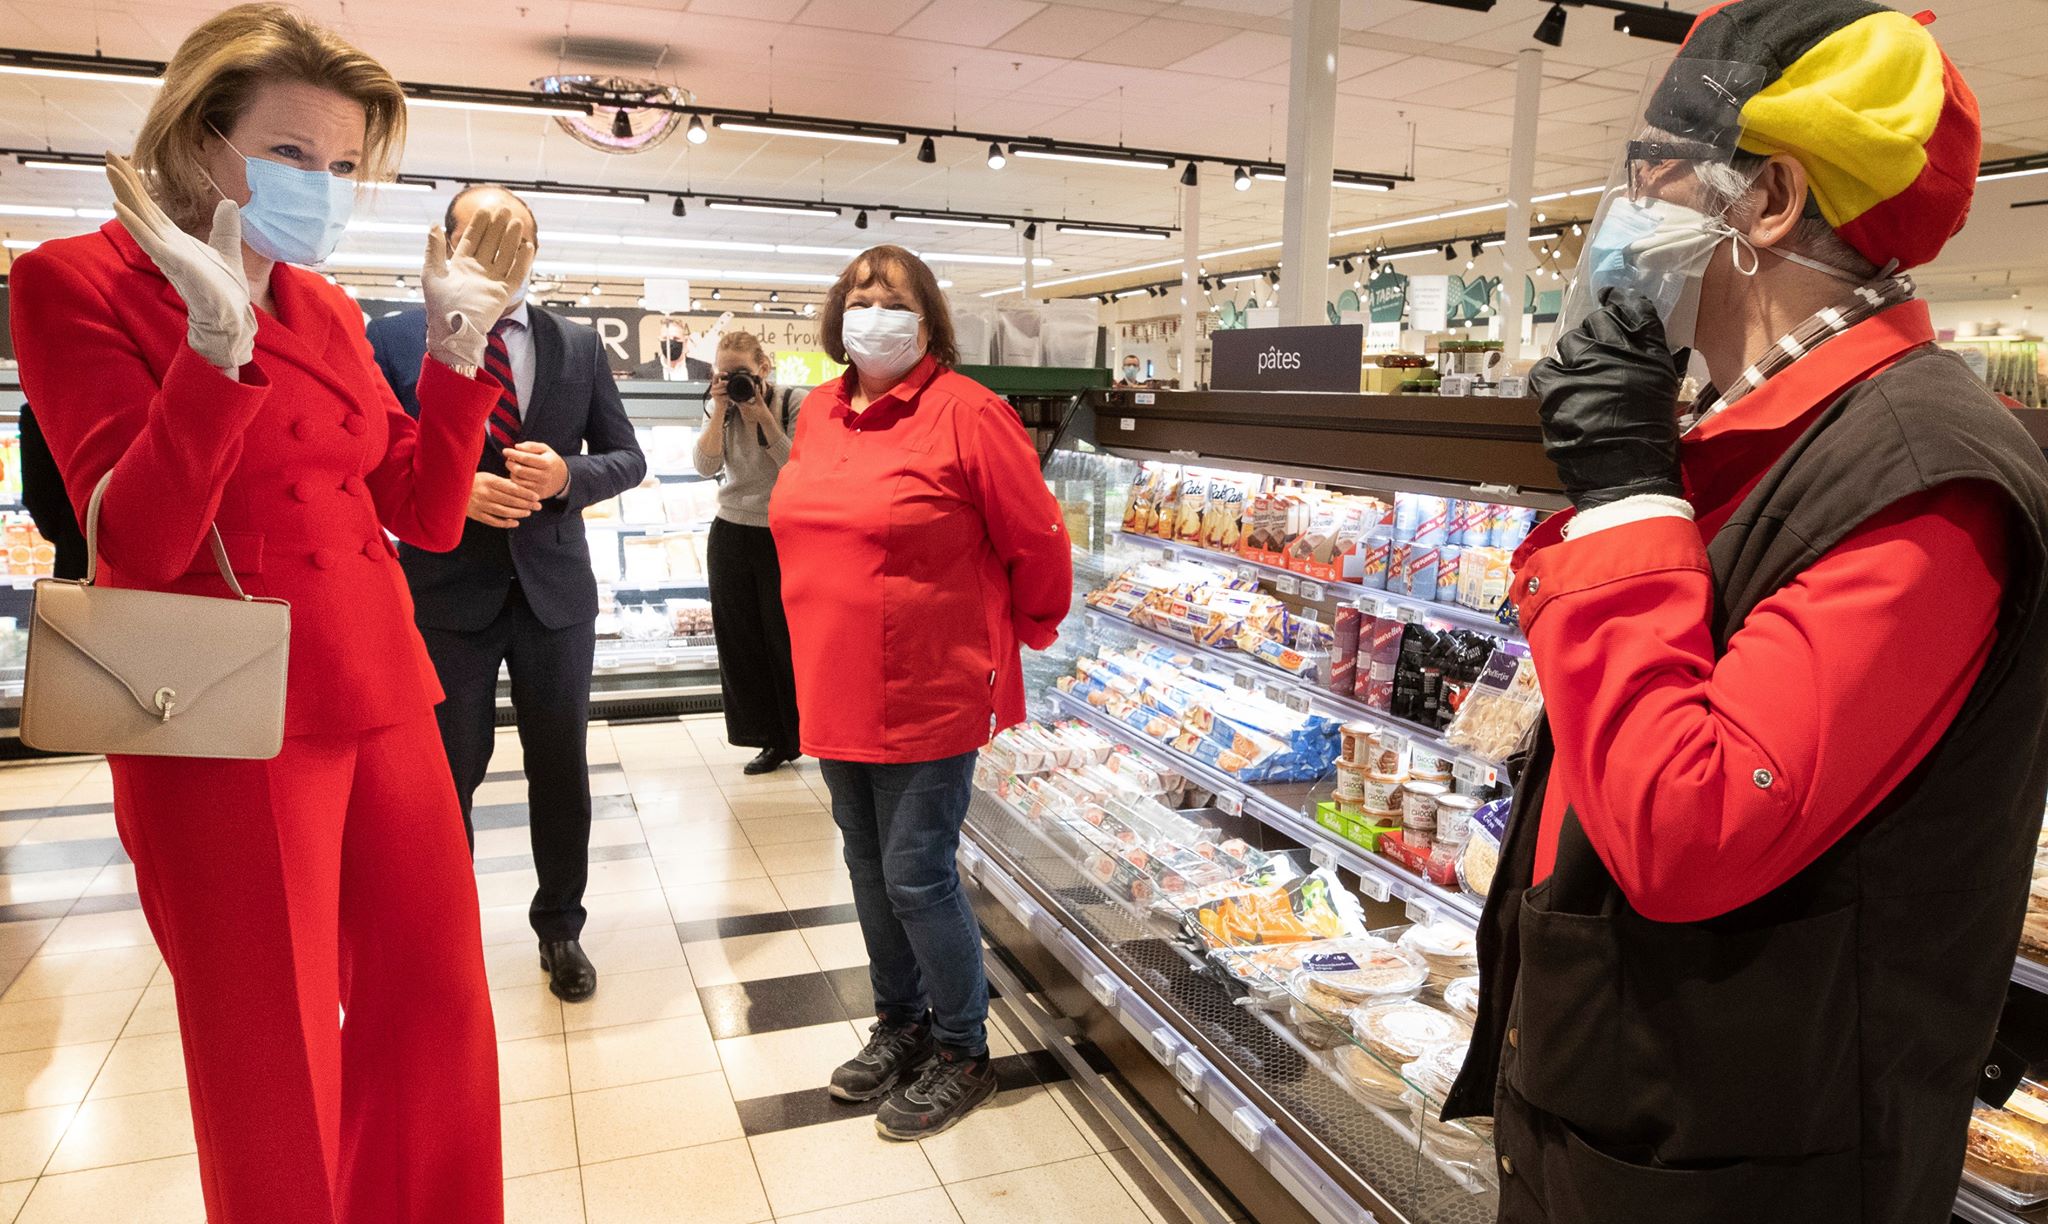 Не  щодня можно побачити королеву біля  каси супермаркету. Це сталося днями в Герпінні в Бельгії, де королева Матільда, дружина короля Філіпа, з'явилася в супермаркеті мережі Carrefour